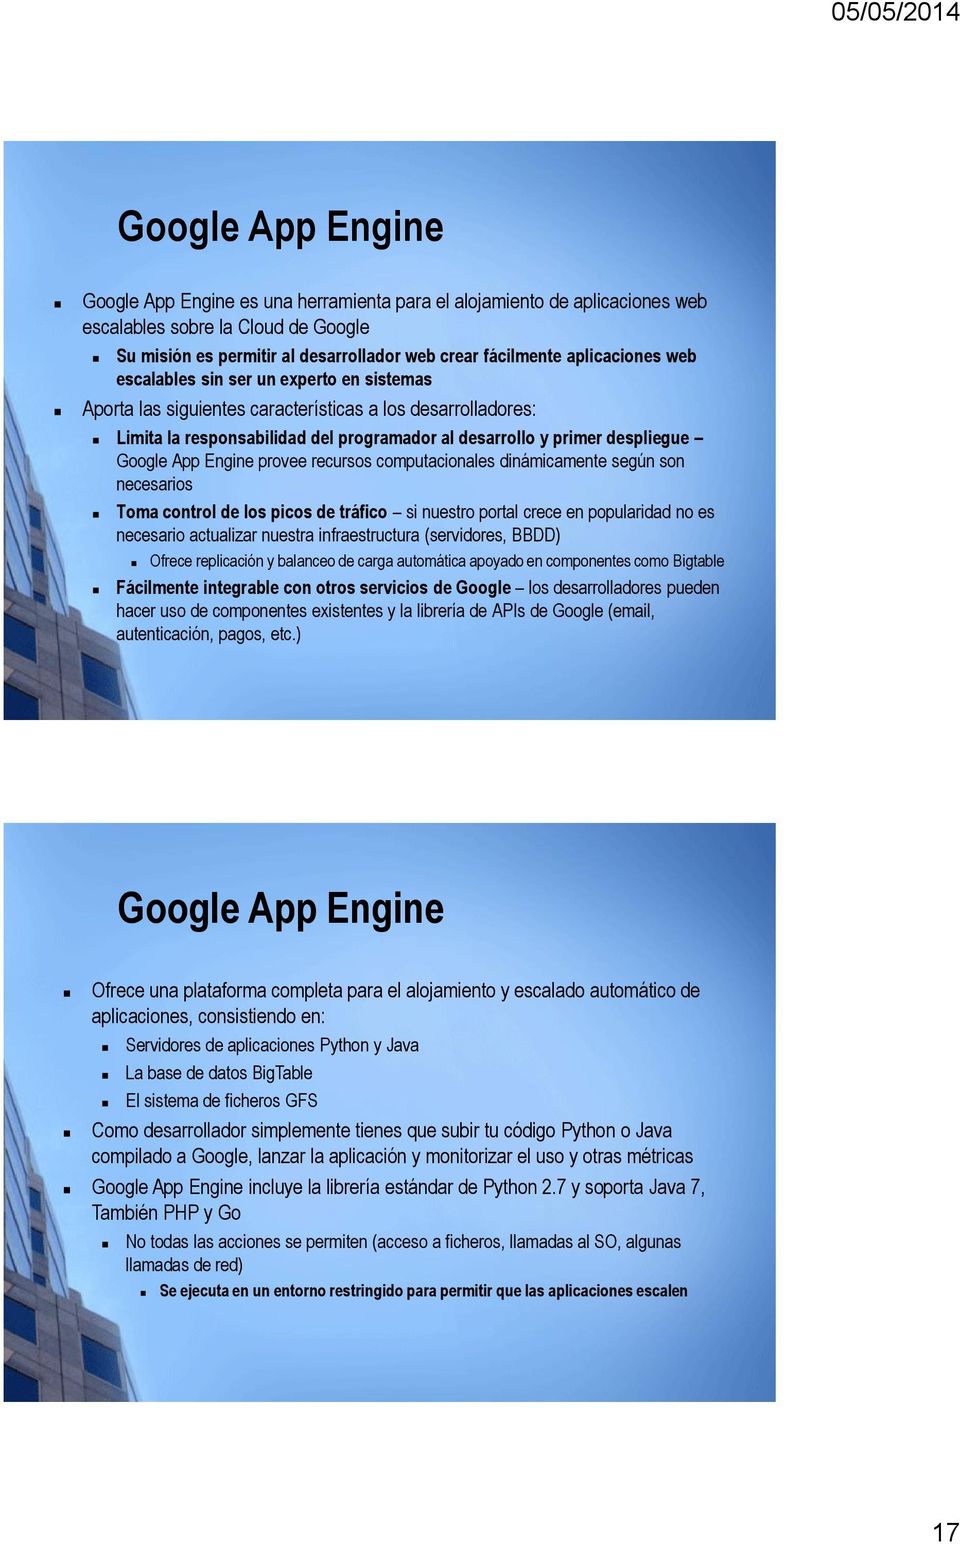 Google App Engine provee recursos computacionales dinámicamente según son necesarios Toma control de los picos de tráfico si nuestro portal crece en popularidad no es necesario actualizar nuestra